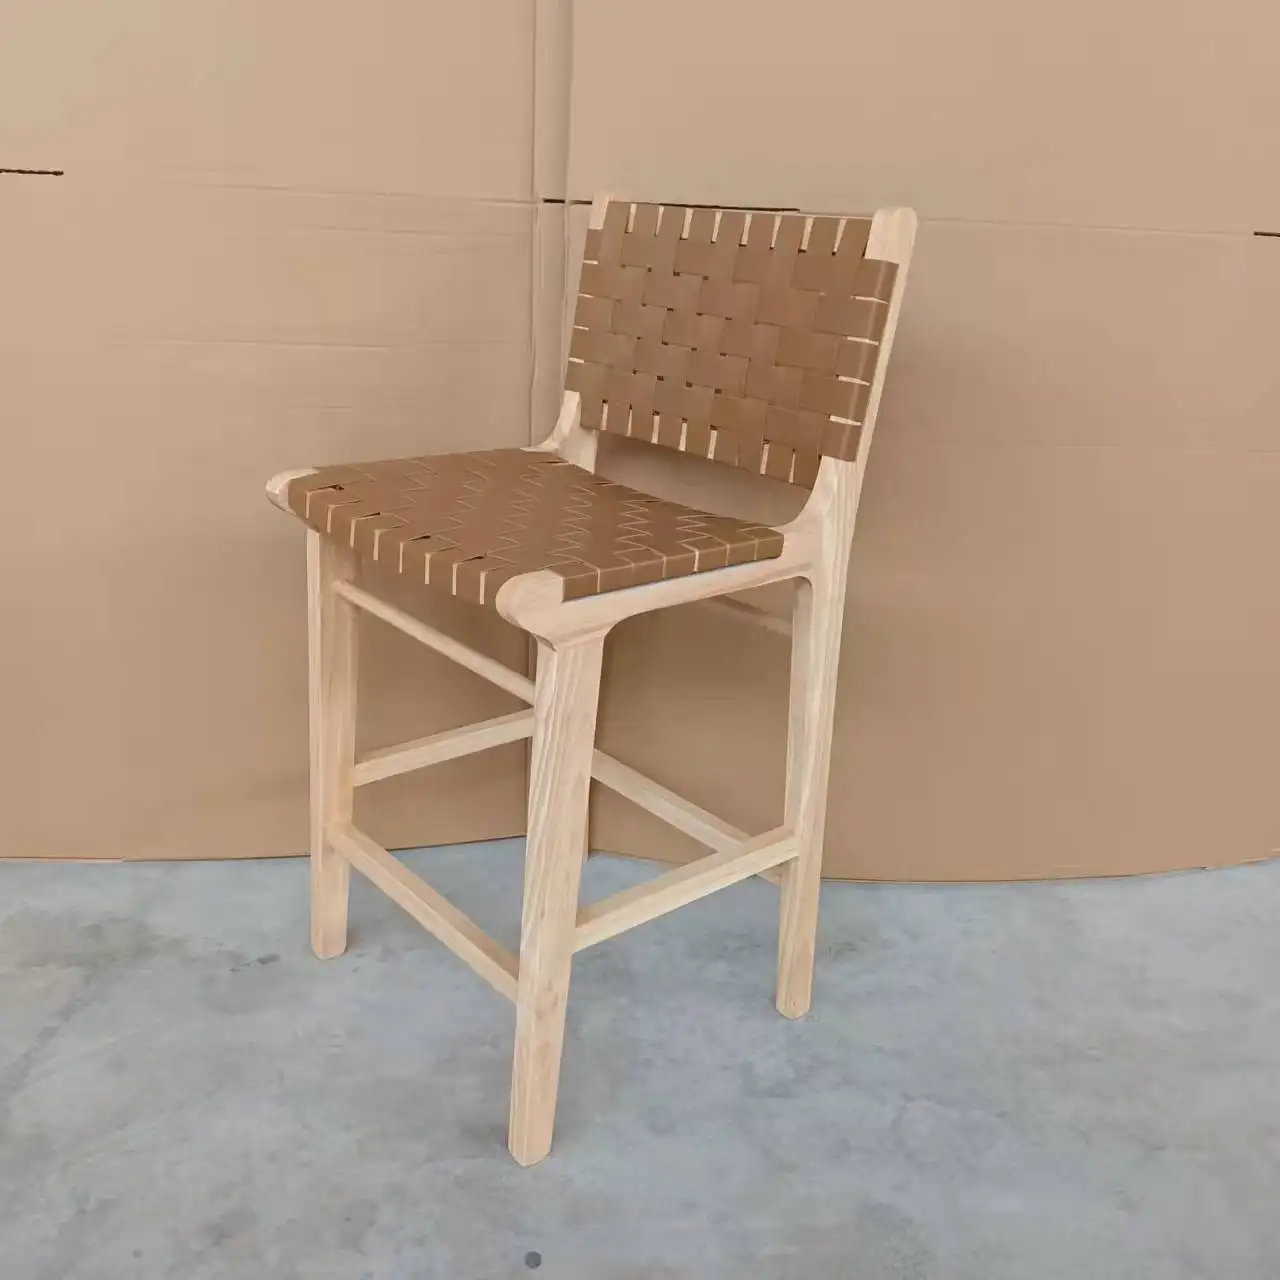 Taburete de madera de tejido nórdico moderno para exteriores, taburetes de pu para kitc hen, sillas altas personalizadas, venta al por mayor, 2022